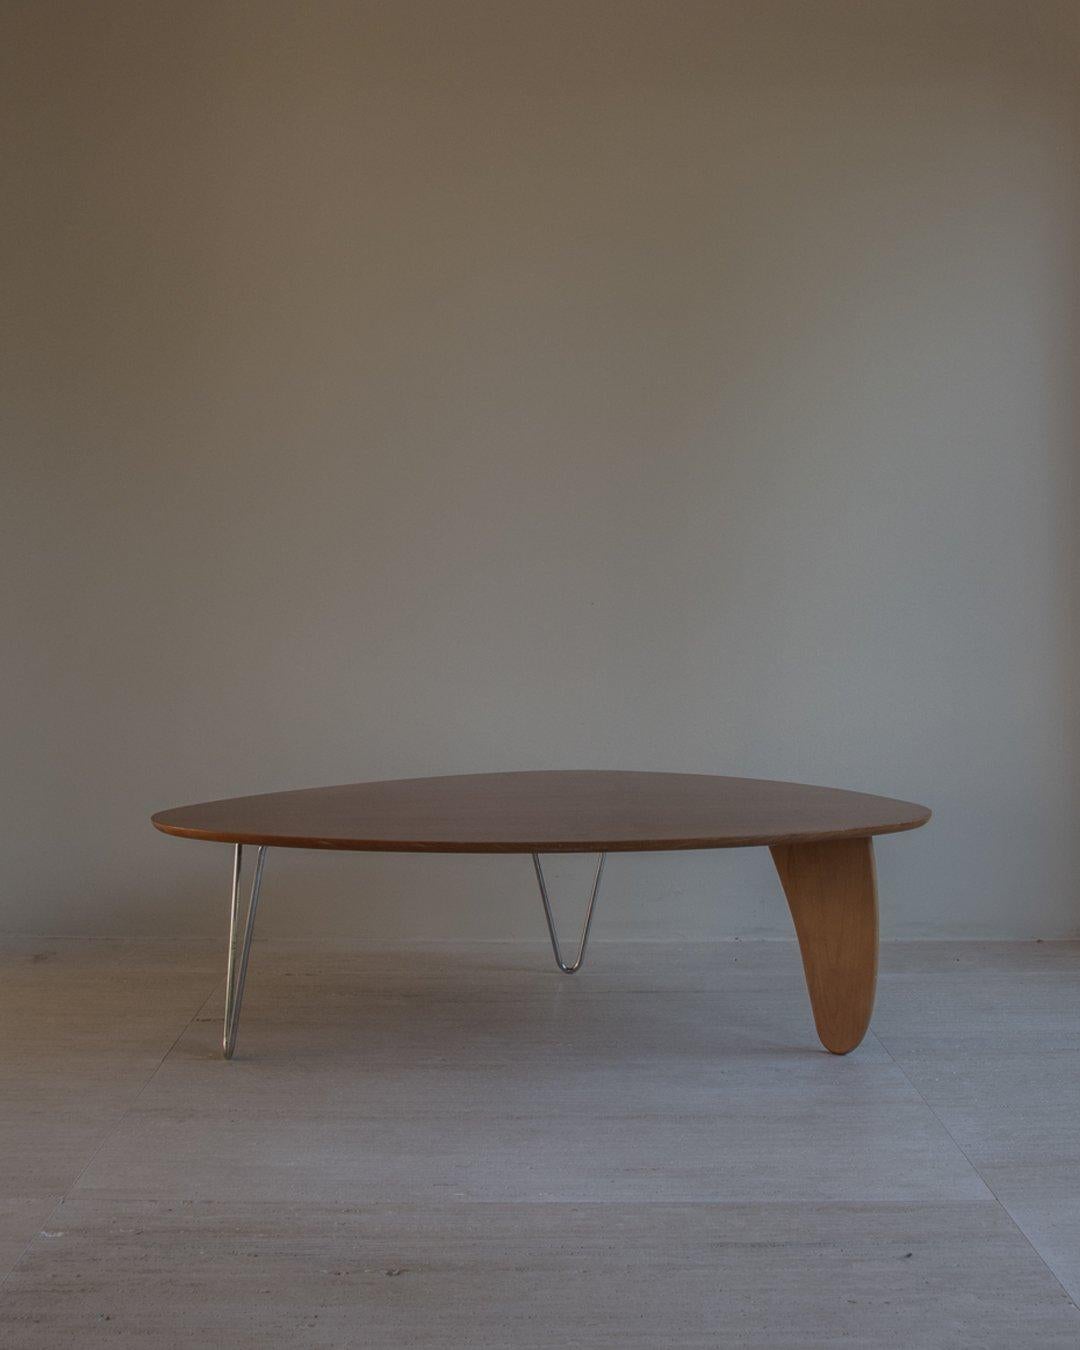 Table basse Rudder, modèle IN-52, conçue en 1944 par Isamu Noguchi - produite vers les années 1970. Table en bois de bouleau et placage de bois, avec un plateau amorphe reposant sur deux pieds en épingle à cheveux chromés et un support en forme de